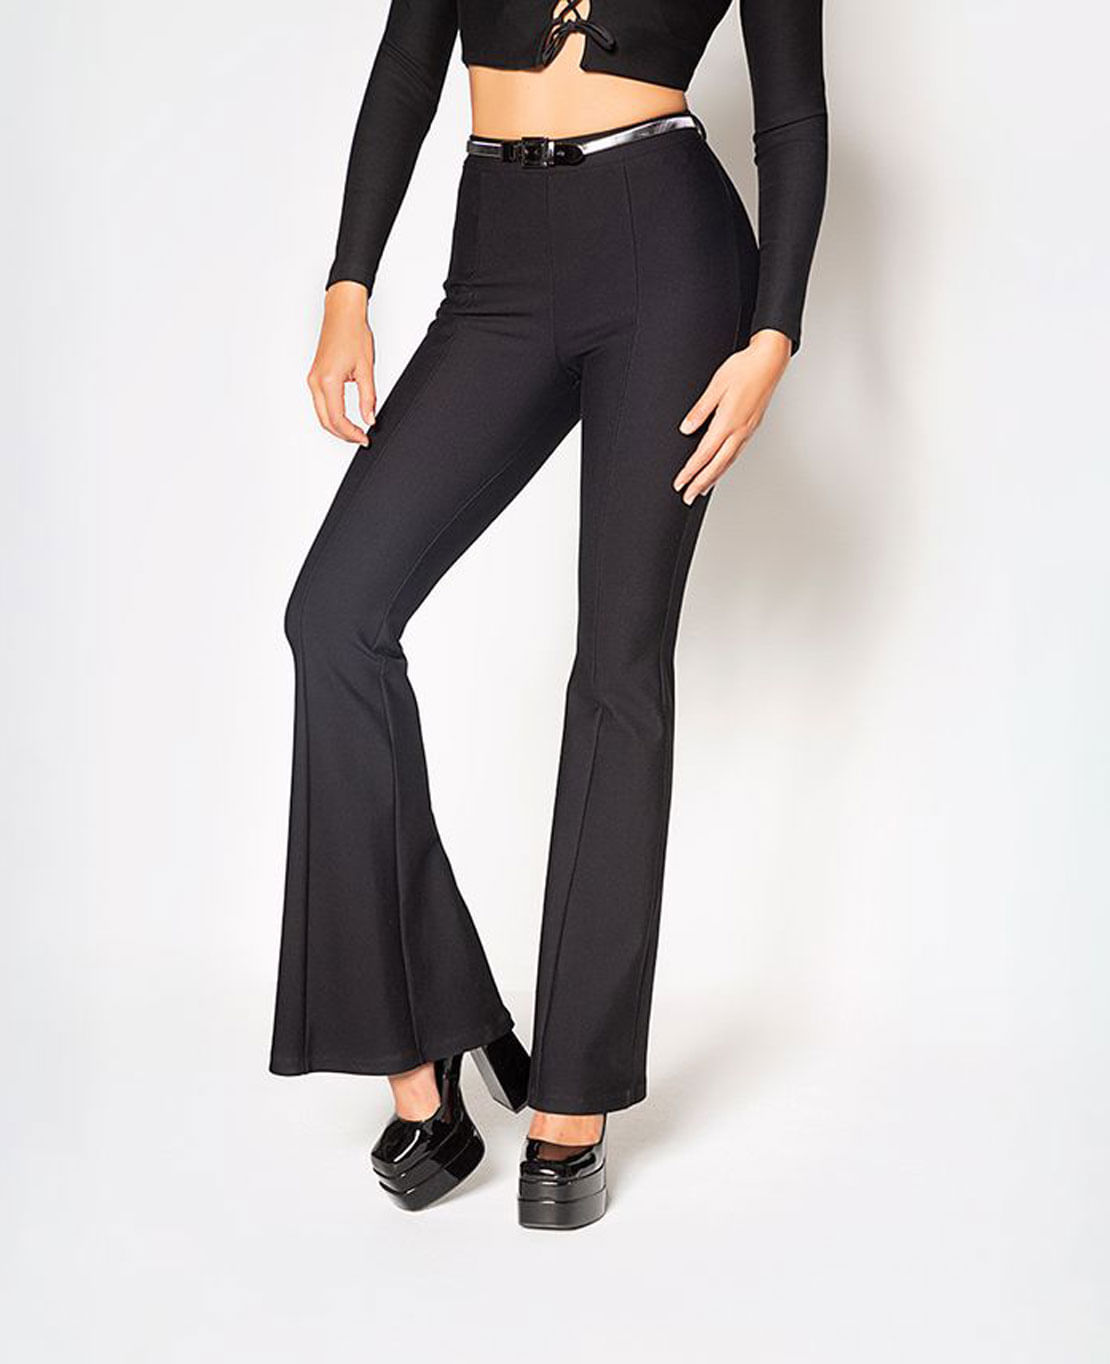 Pantalones Negros Mujer Marca Studio F Talla 10 Nuevos